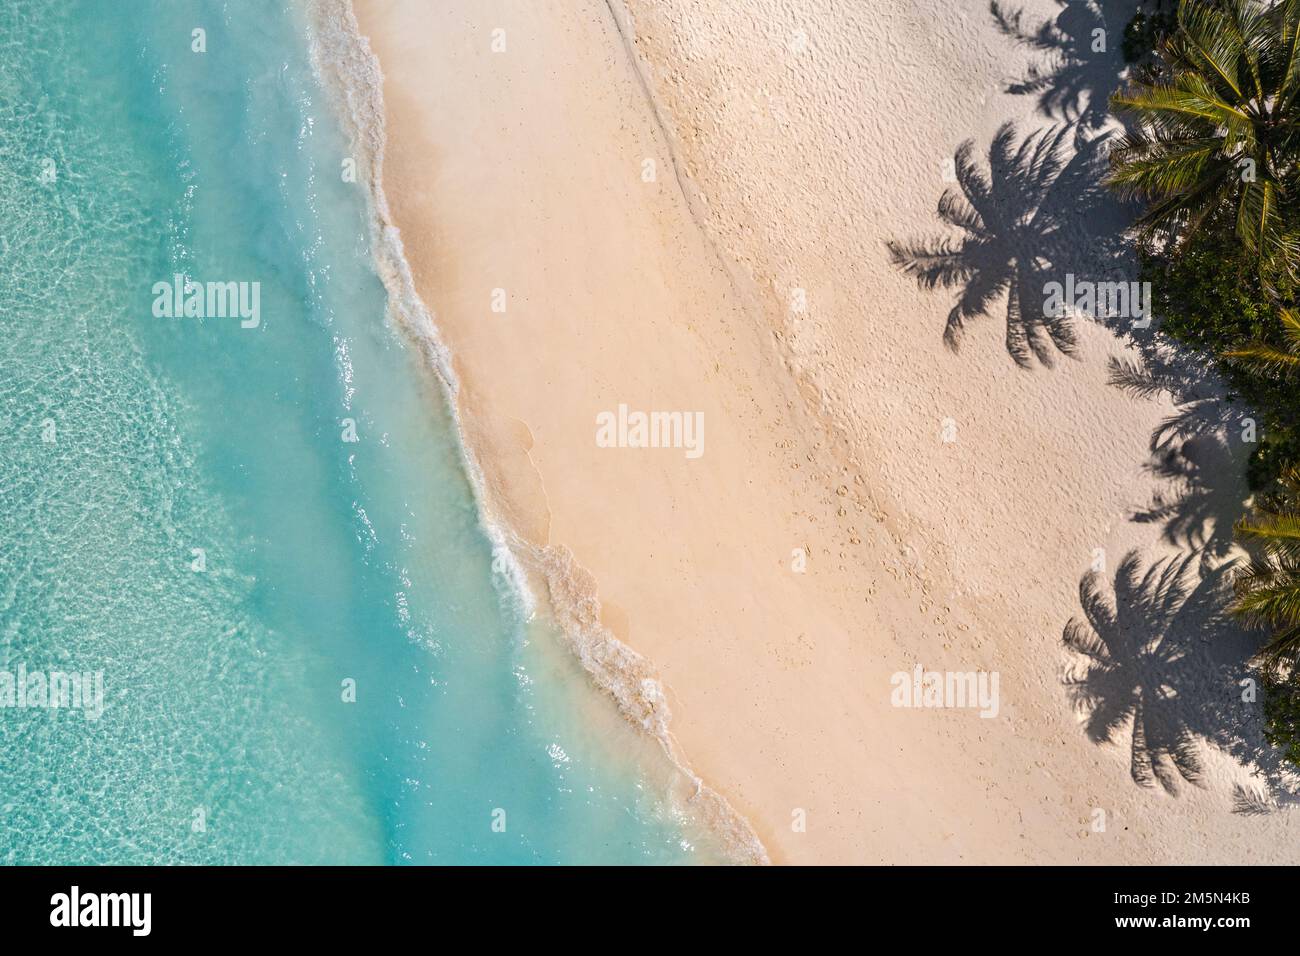 Vista panoramica aerea delle palme tropicali estive, ombre sulla costa sabbiosa, onde oceaniche che si infrangono. Splendida vista dall'alto, soleggiata costa del mare, esotica, incredibile Foto Stock